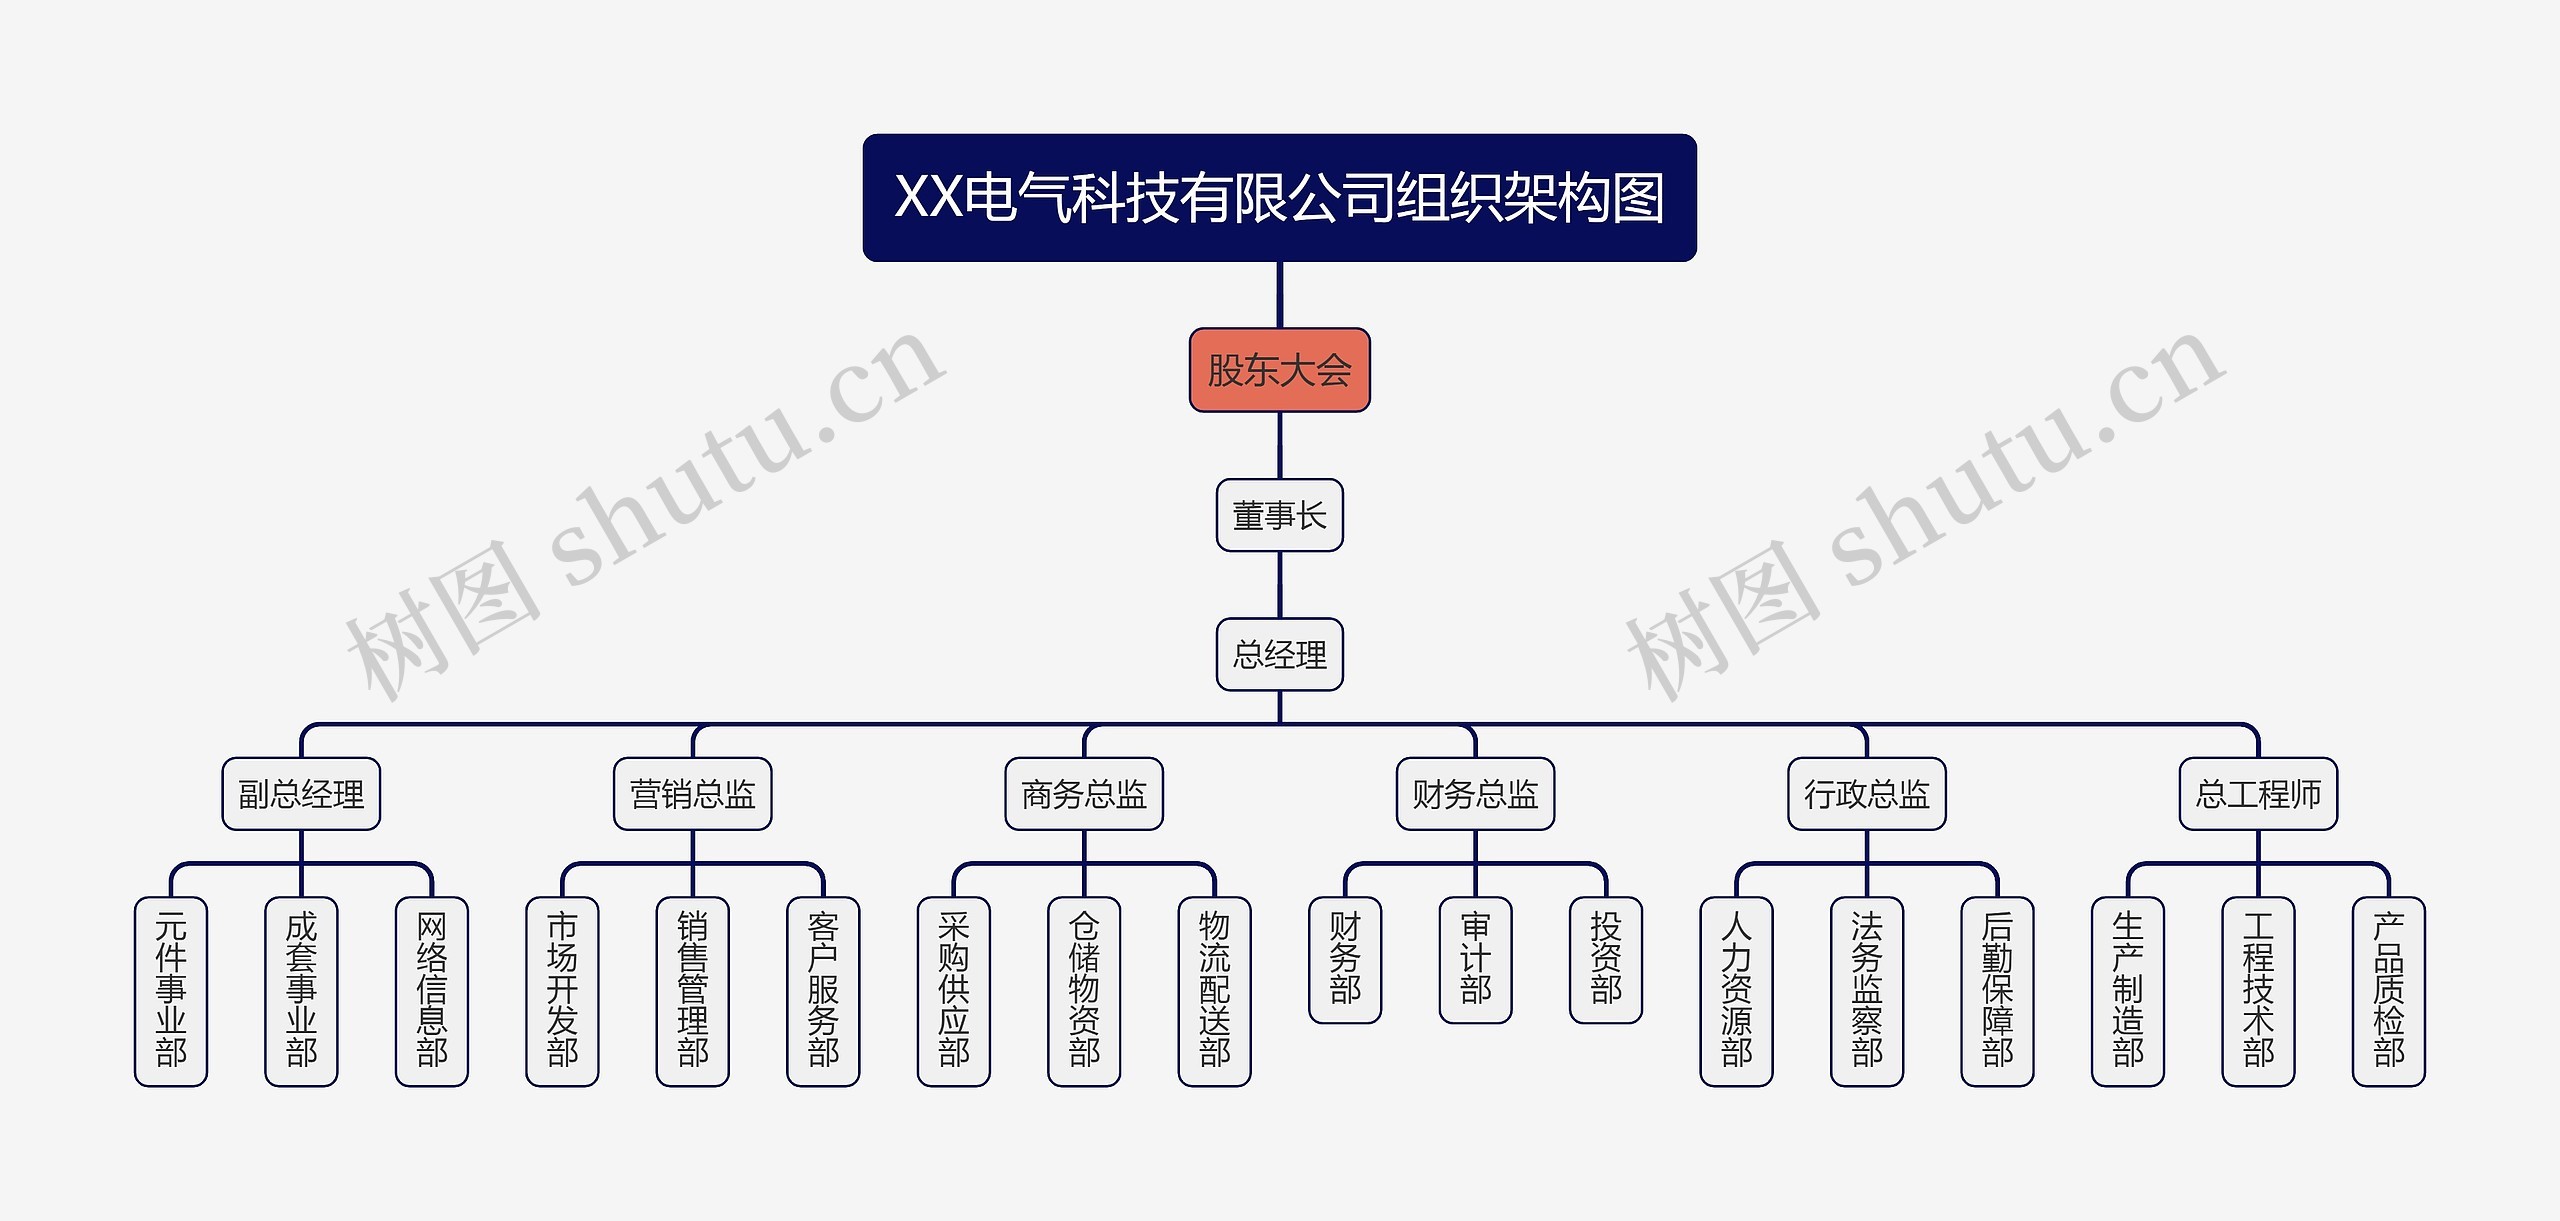 XX电气科技有限公司组织架构图